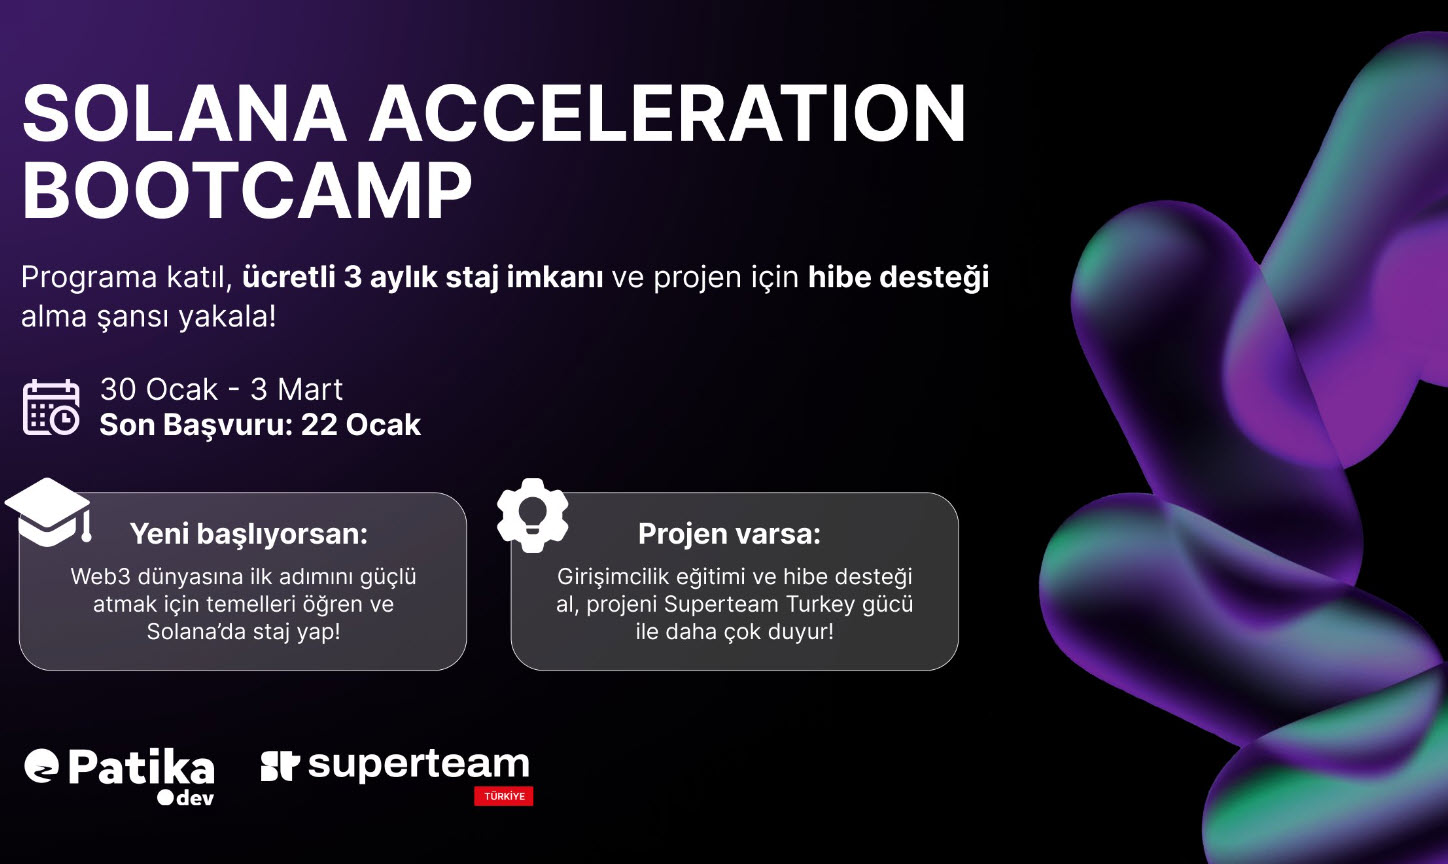 Solana Acceleration Bootcamp'a Katılın ve Teknoloji Kariyerinize Hız Kazandırın